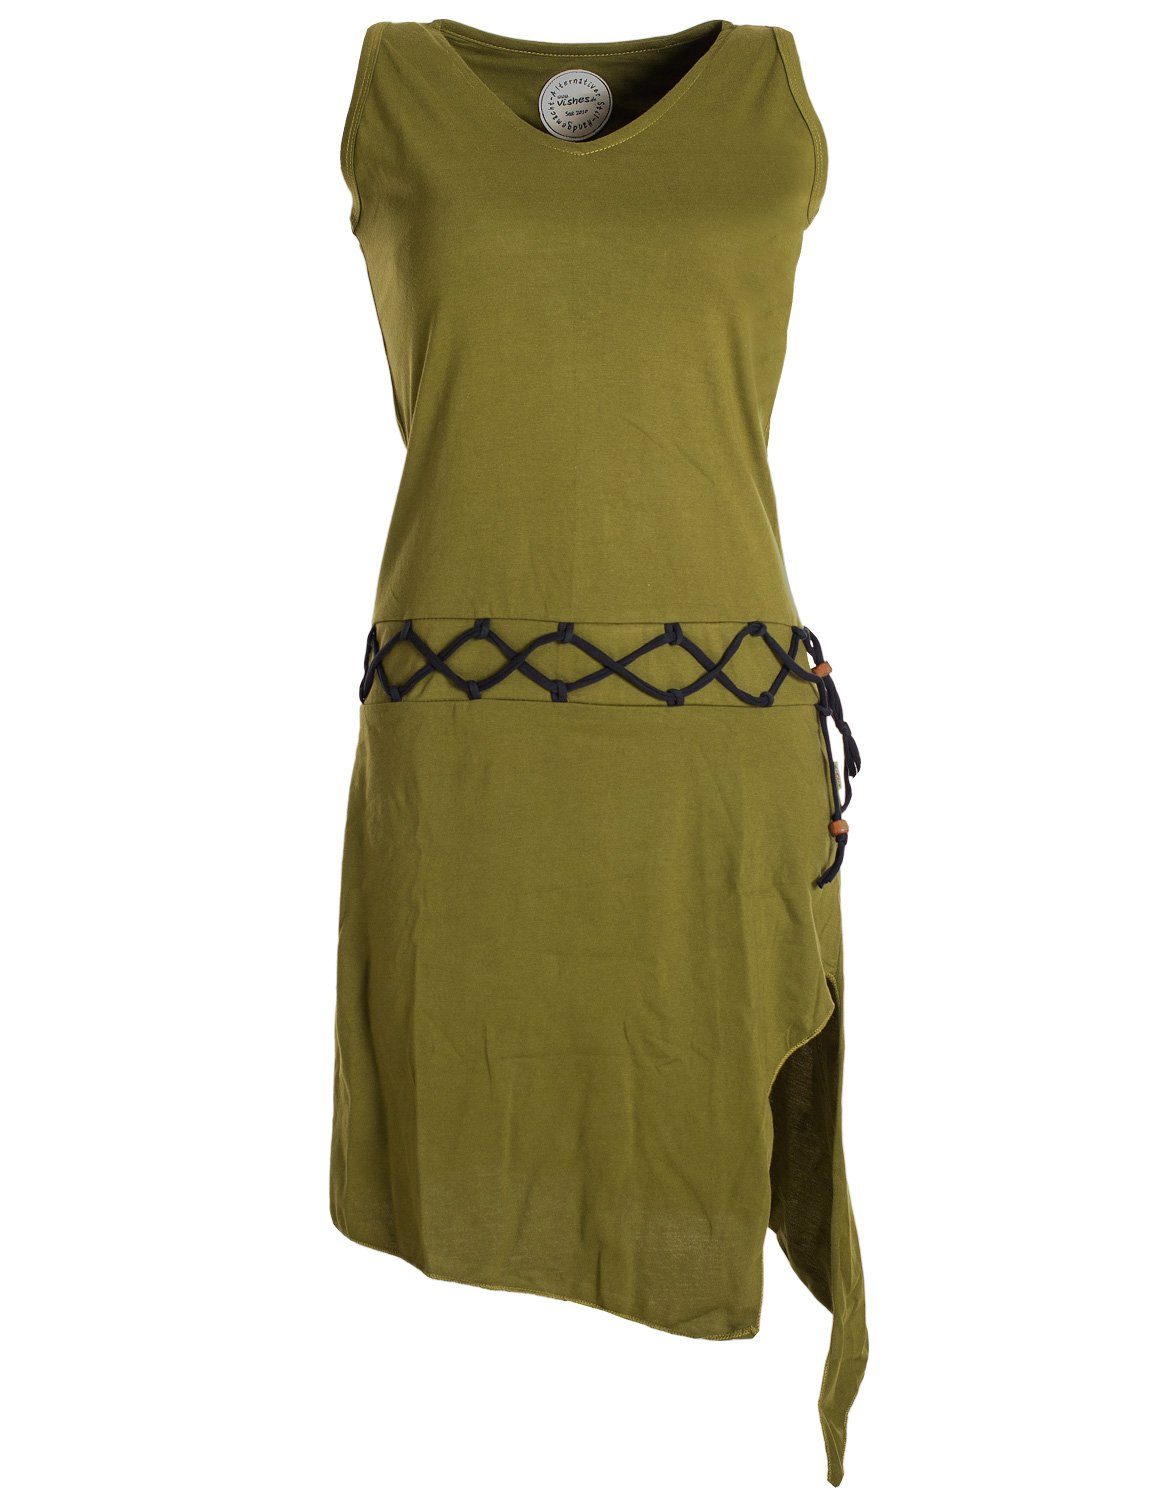 Vishes Sommerkleid Ärmelloses Kleid asymmetrisch Beinausschnitt Gürtel-Schnürung Hippie, Boho, Goa Elfen Style olive